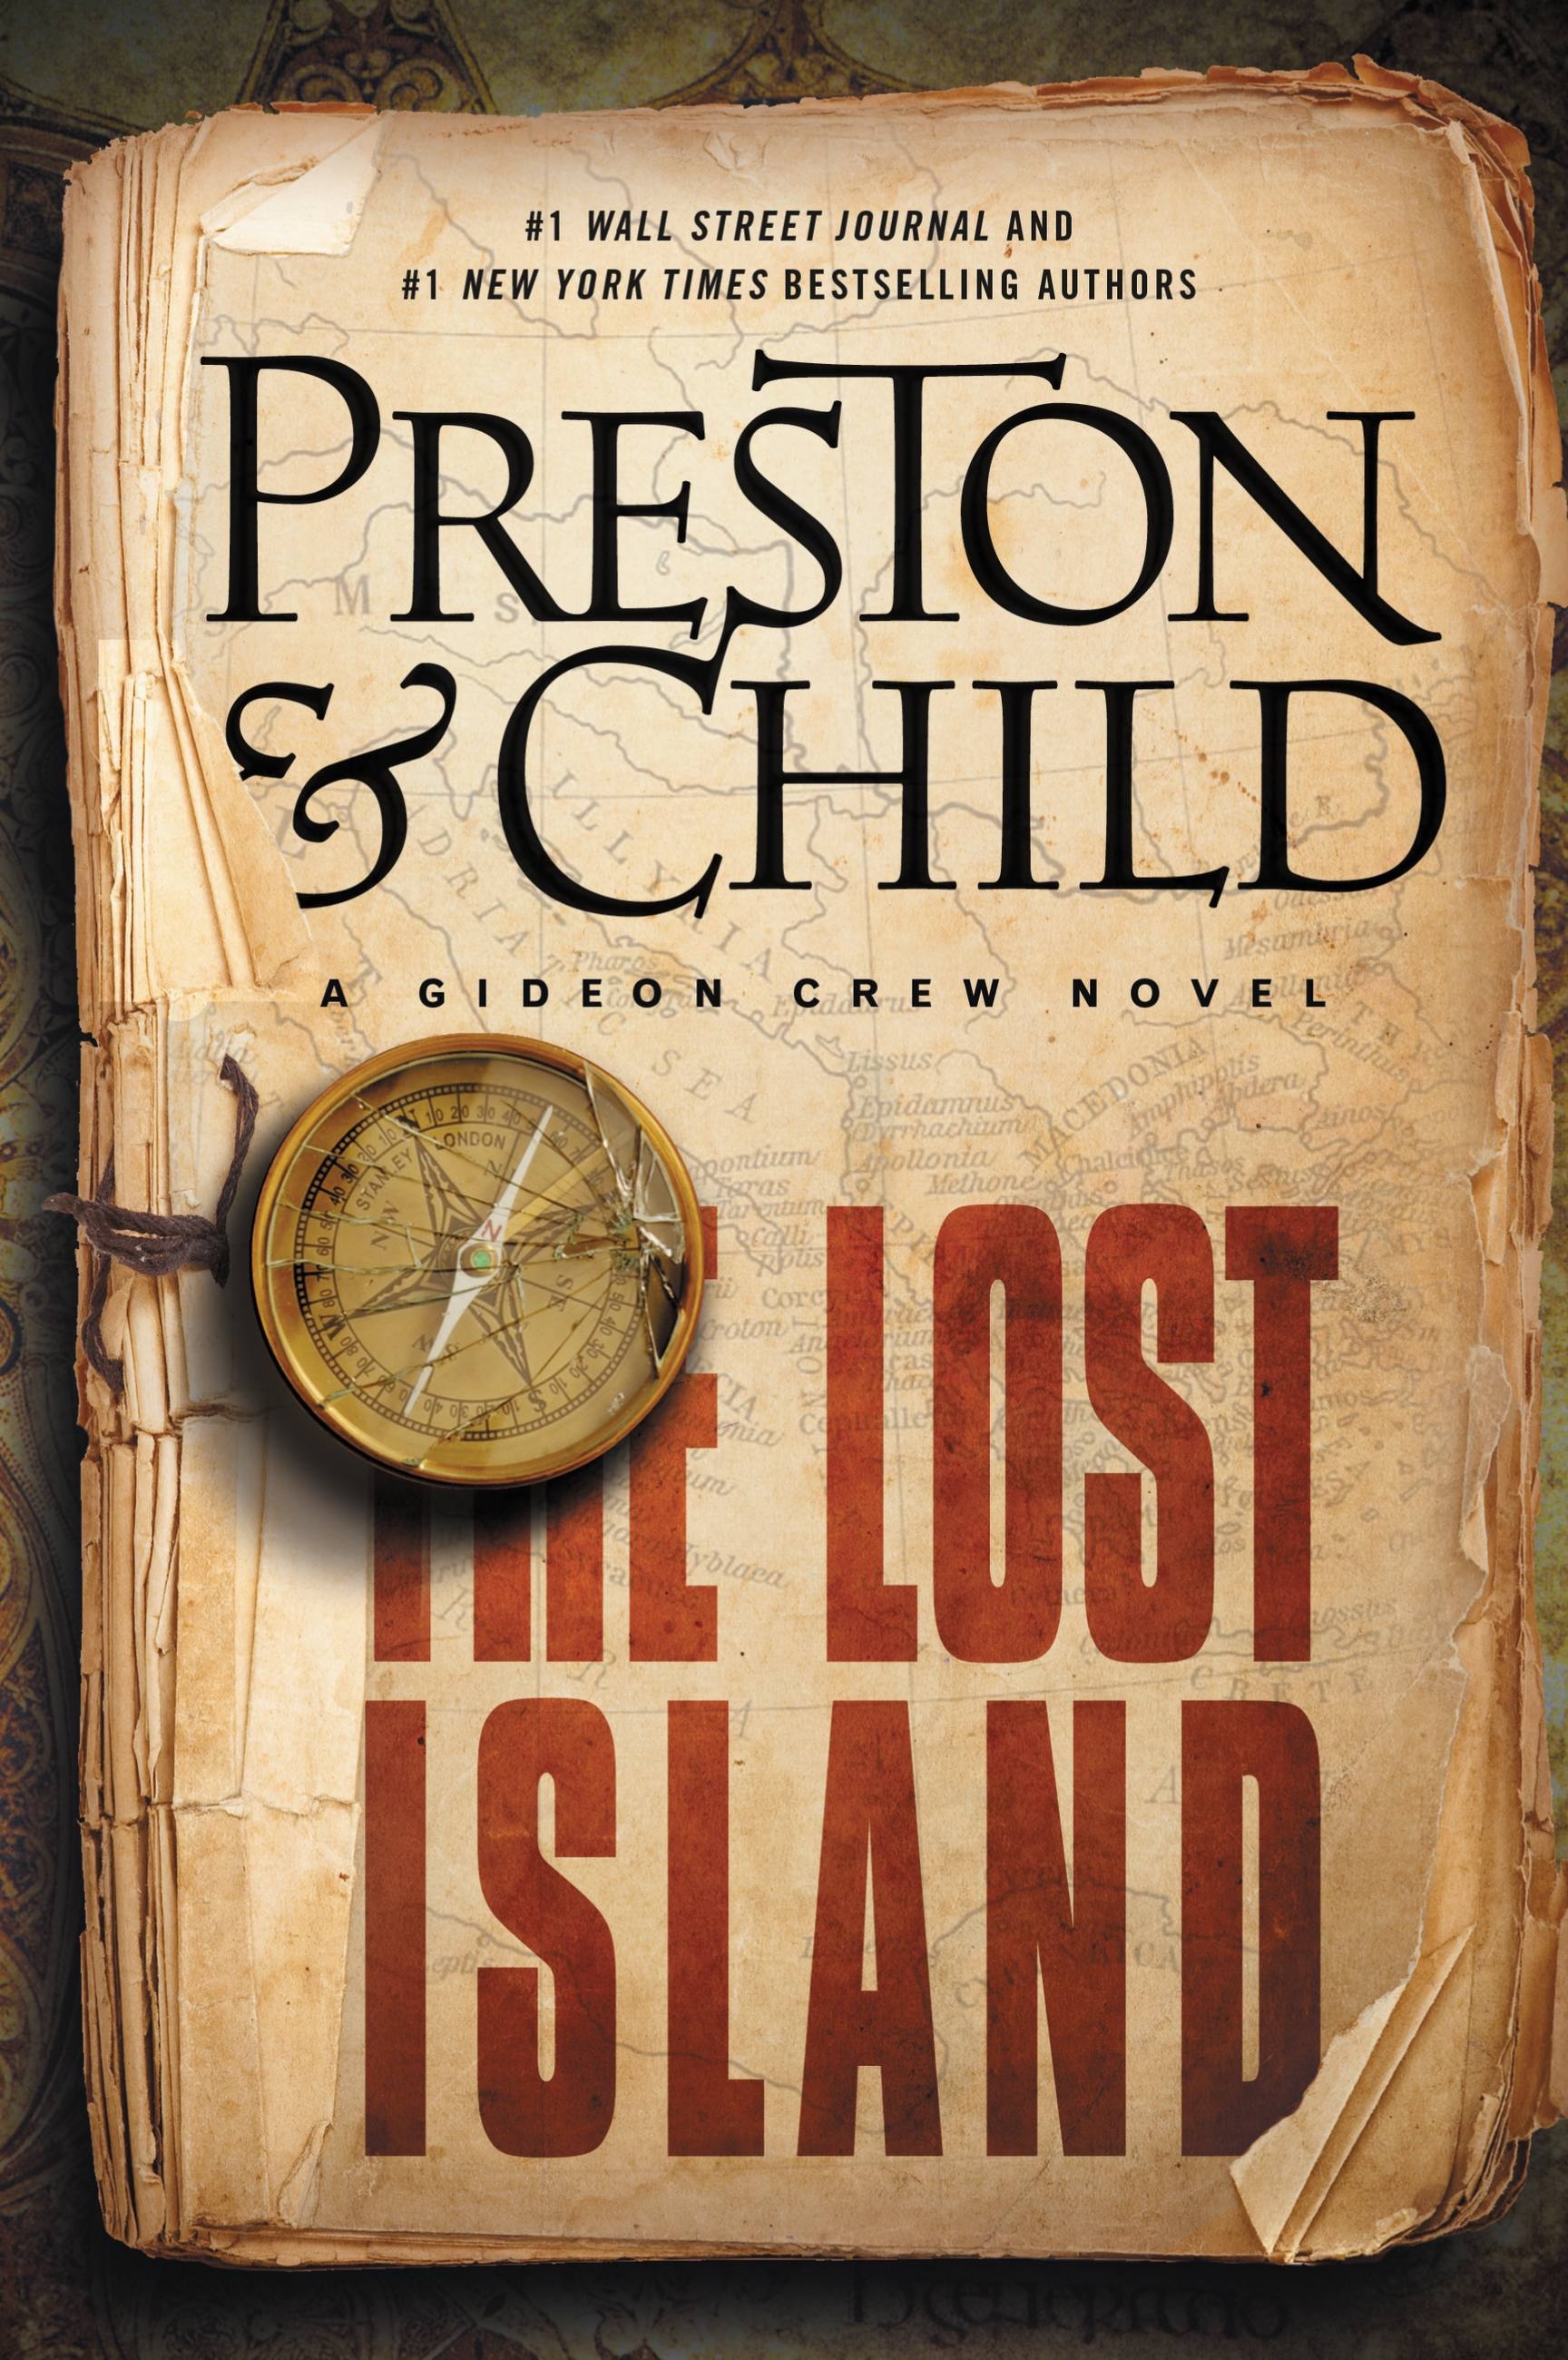 The　Preston　Lost　Island　by　Douglas　Hachette　Book　Group